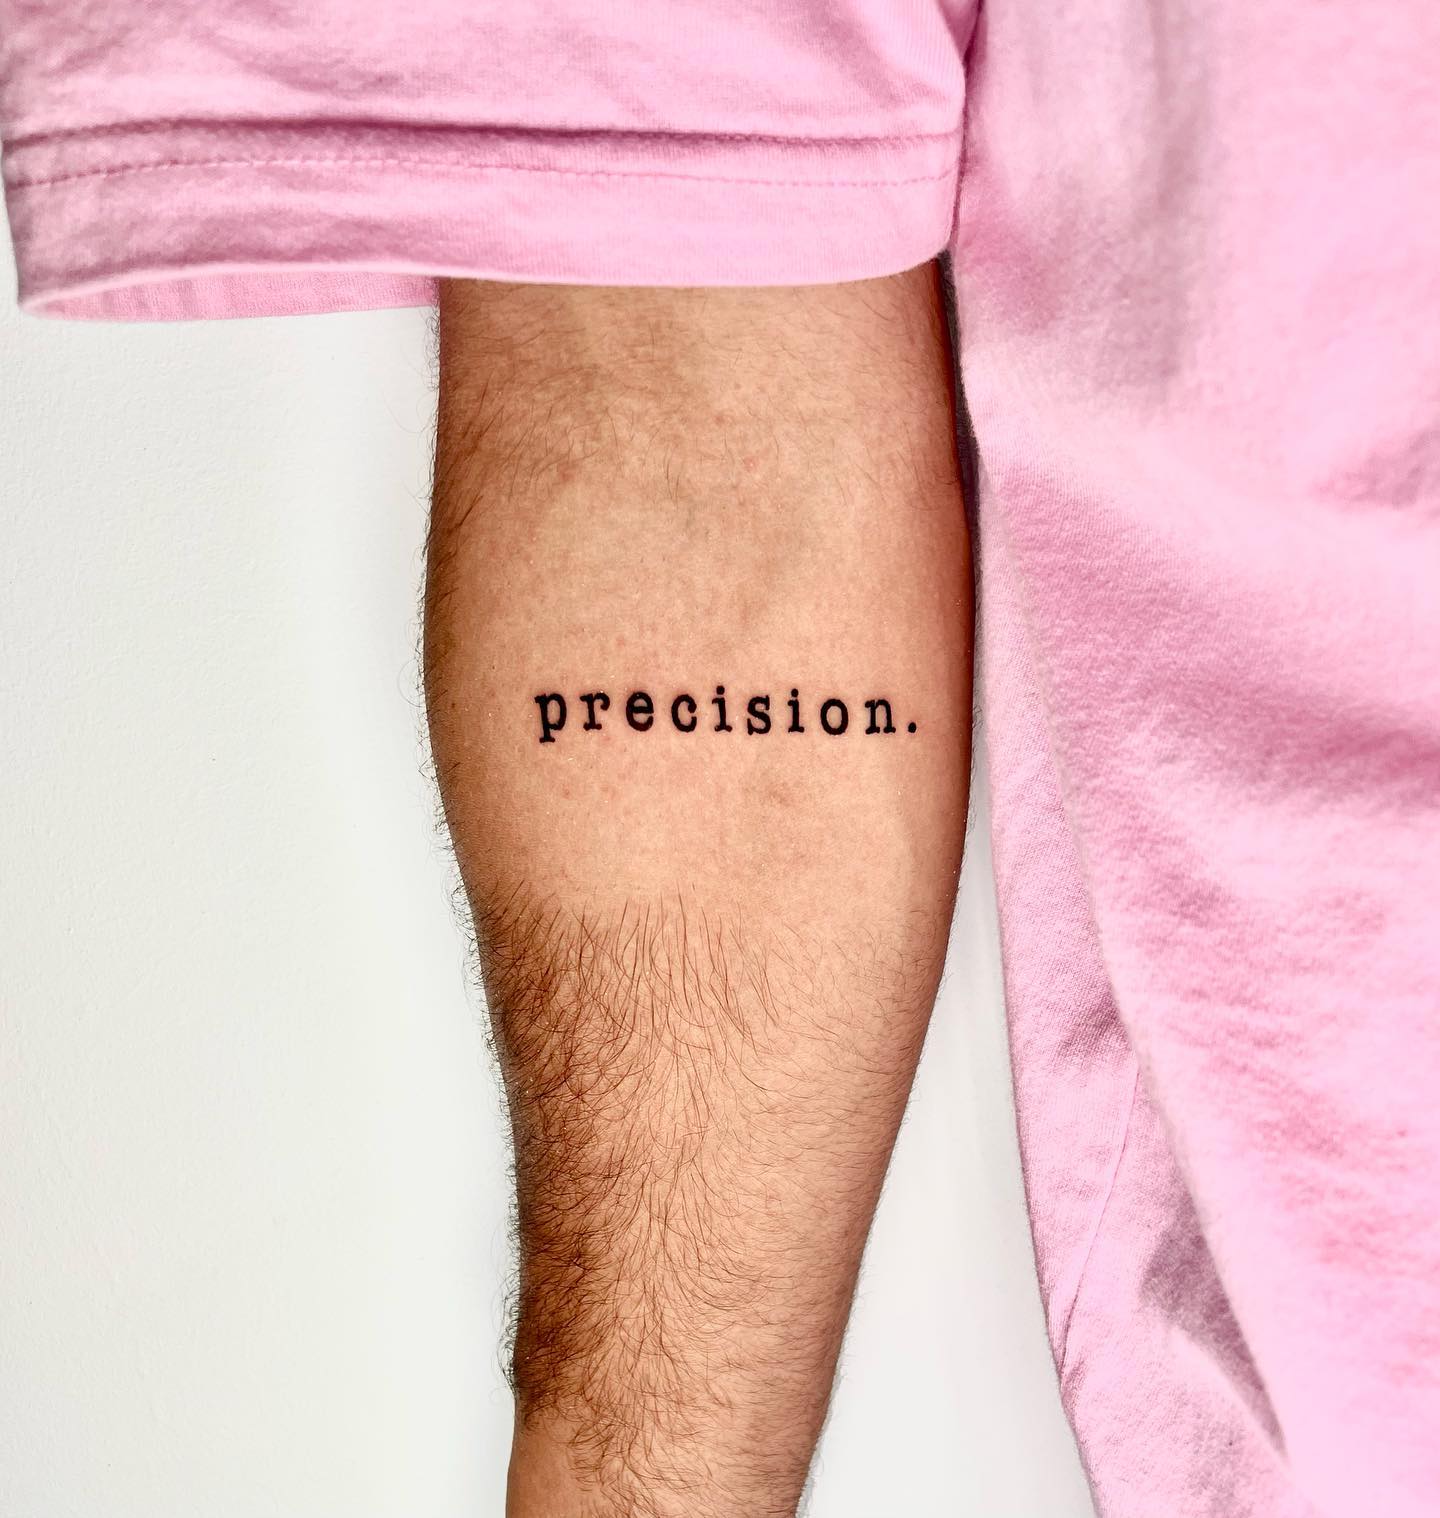 Tatuaje de una palabra con precisión.